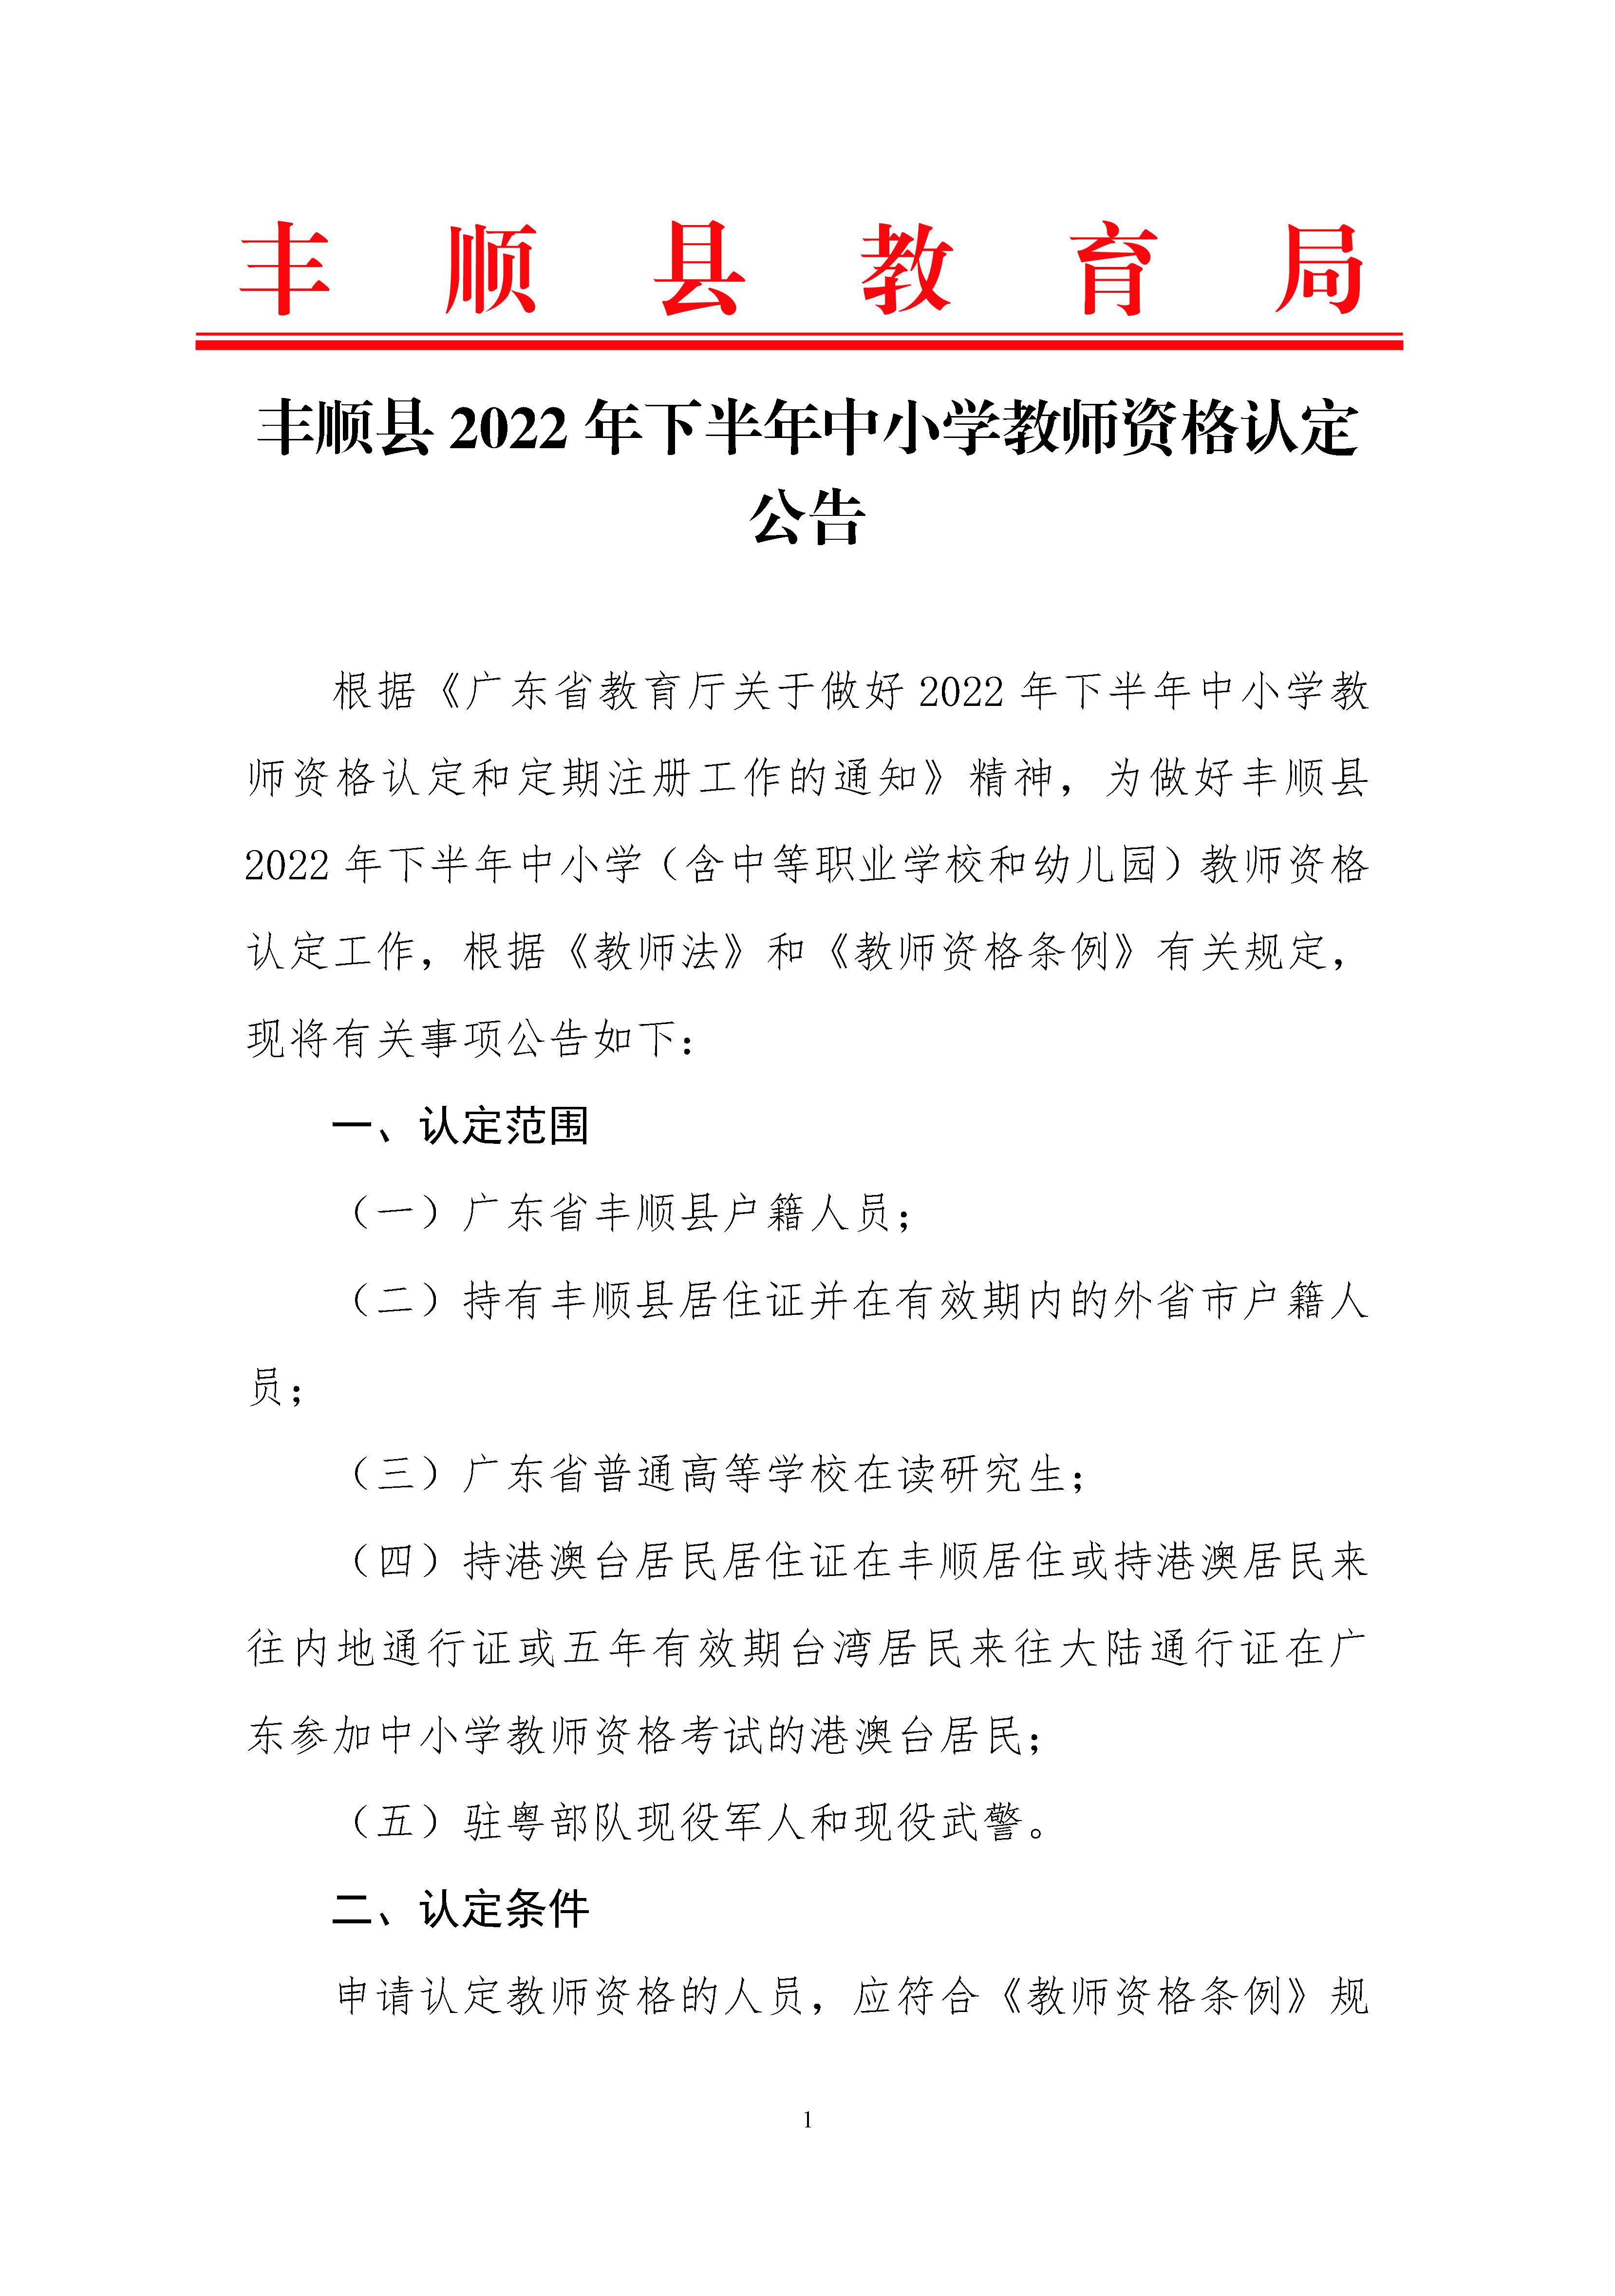 丰顺县2022年下半年中小学教师资格认定公告_页面_01.jpg